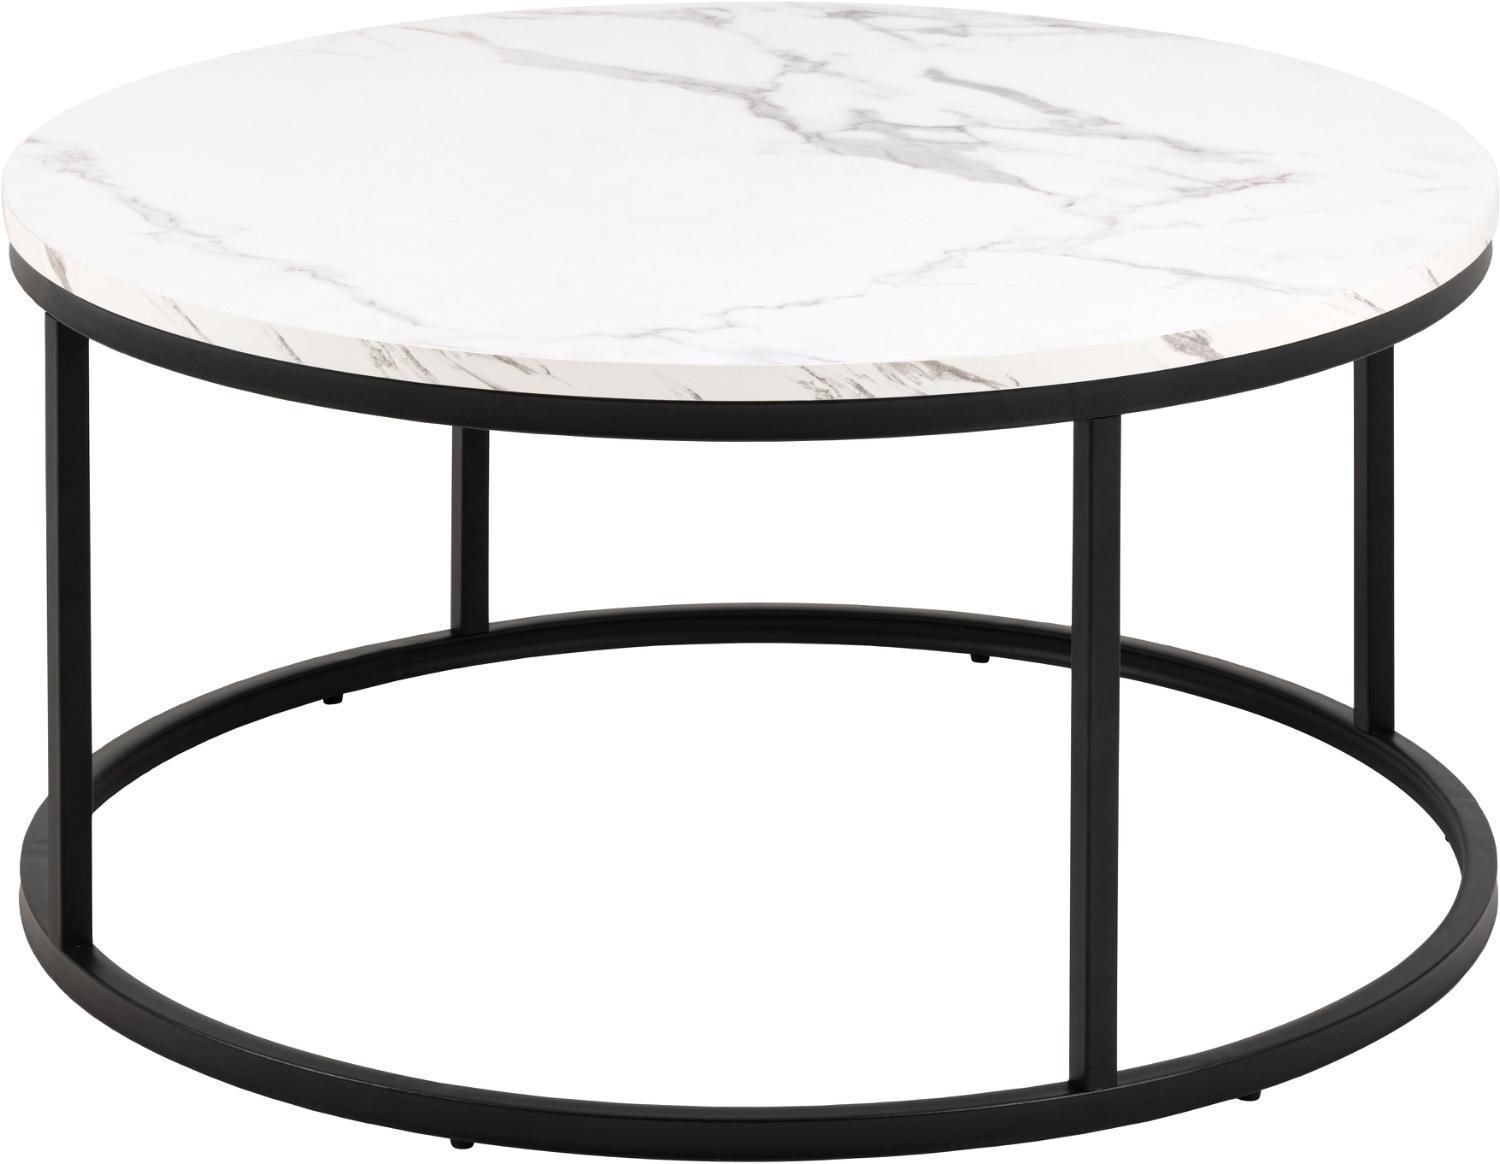 ACT NORDIC Spiro soffbord, runt - vit melamin med marmormönster och svart stål (Ø80)